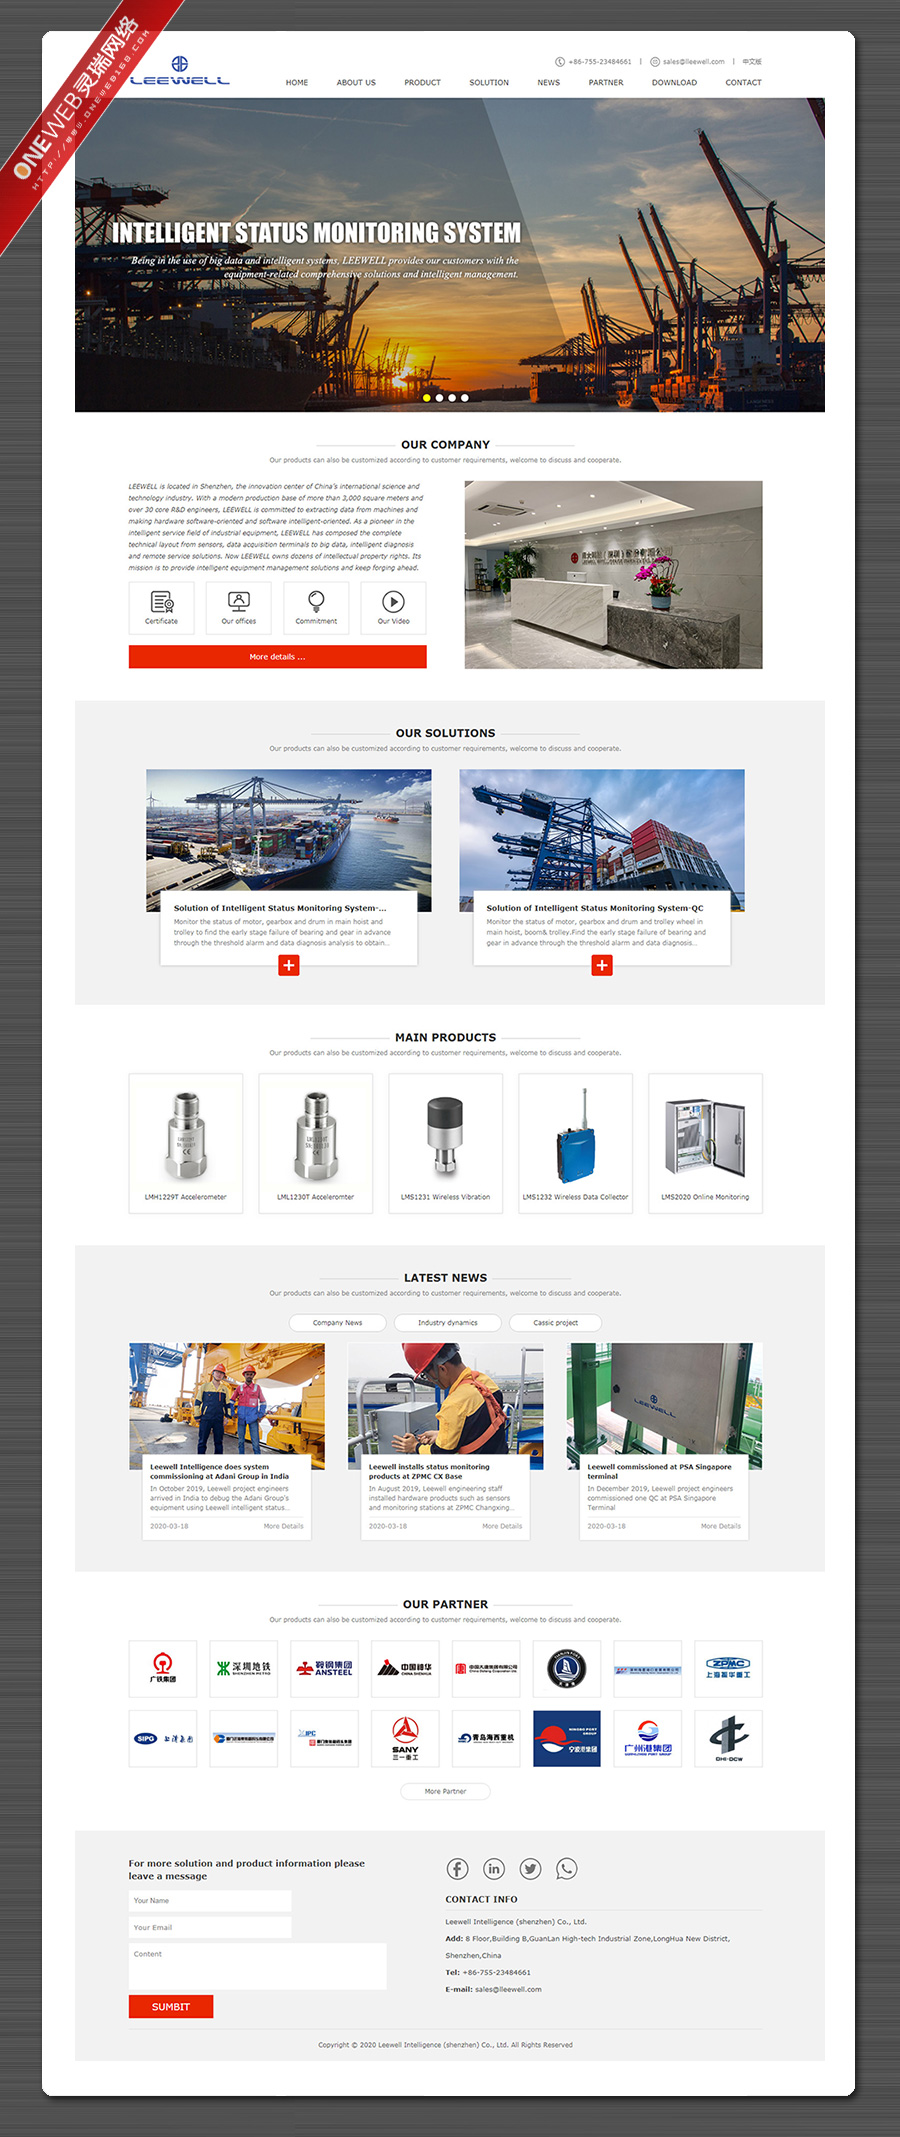 钢铁外贸网站,深圳营销型网站建设